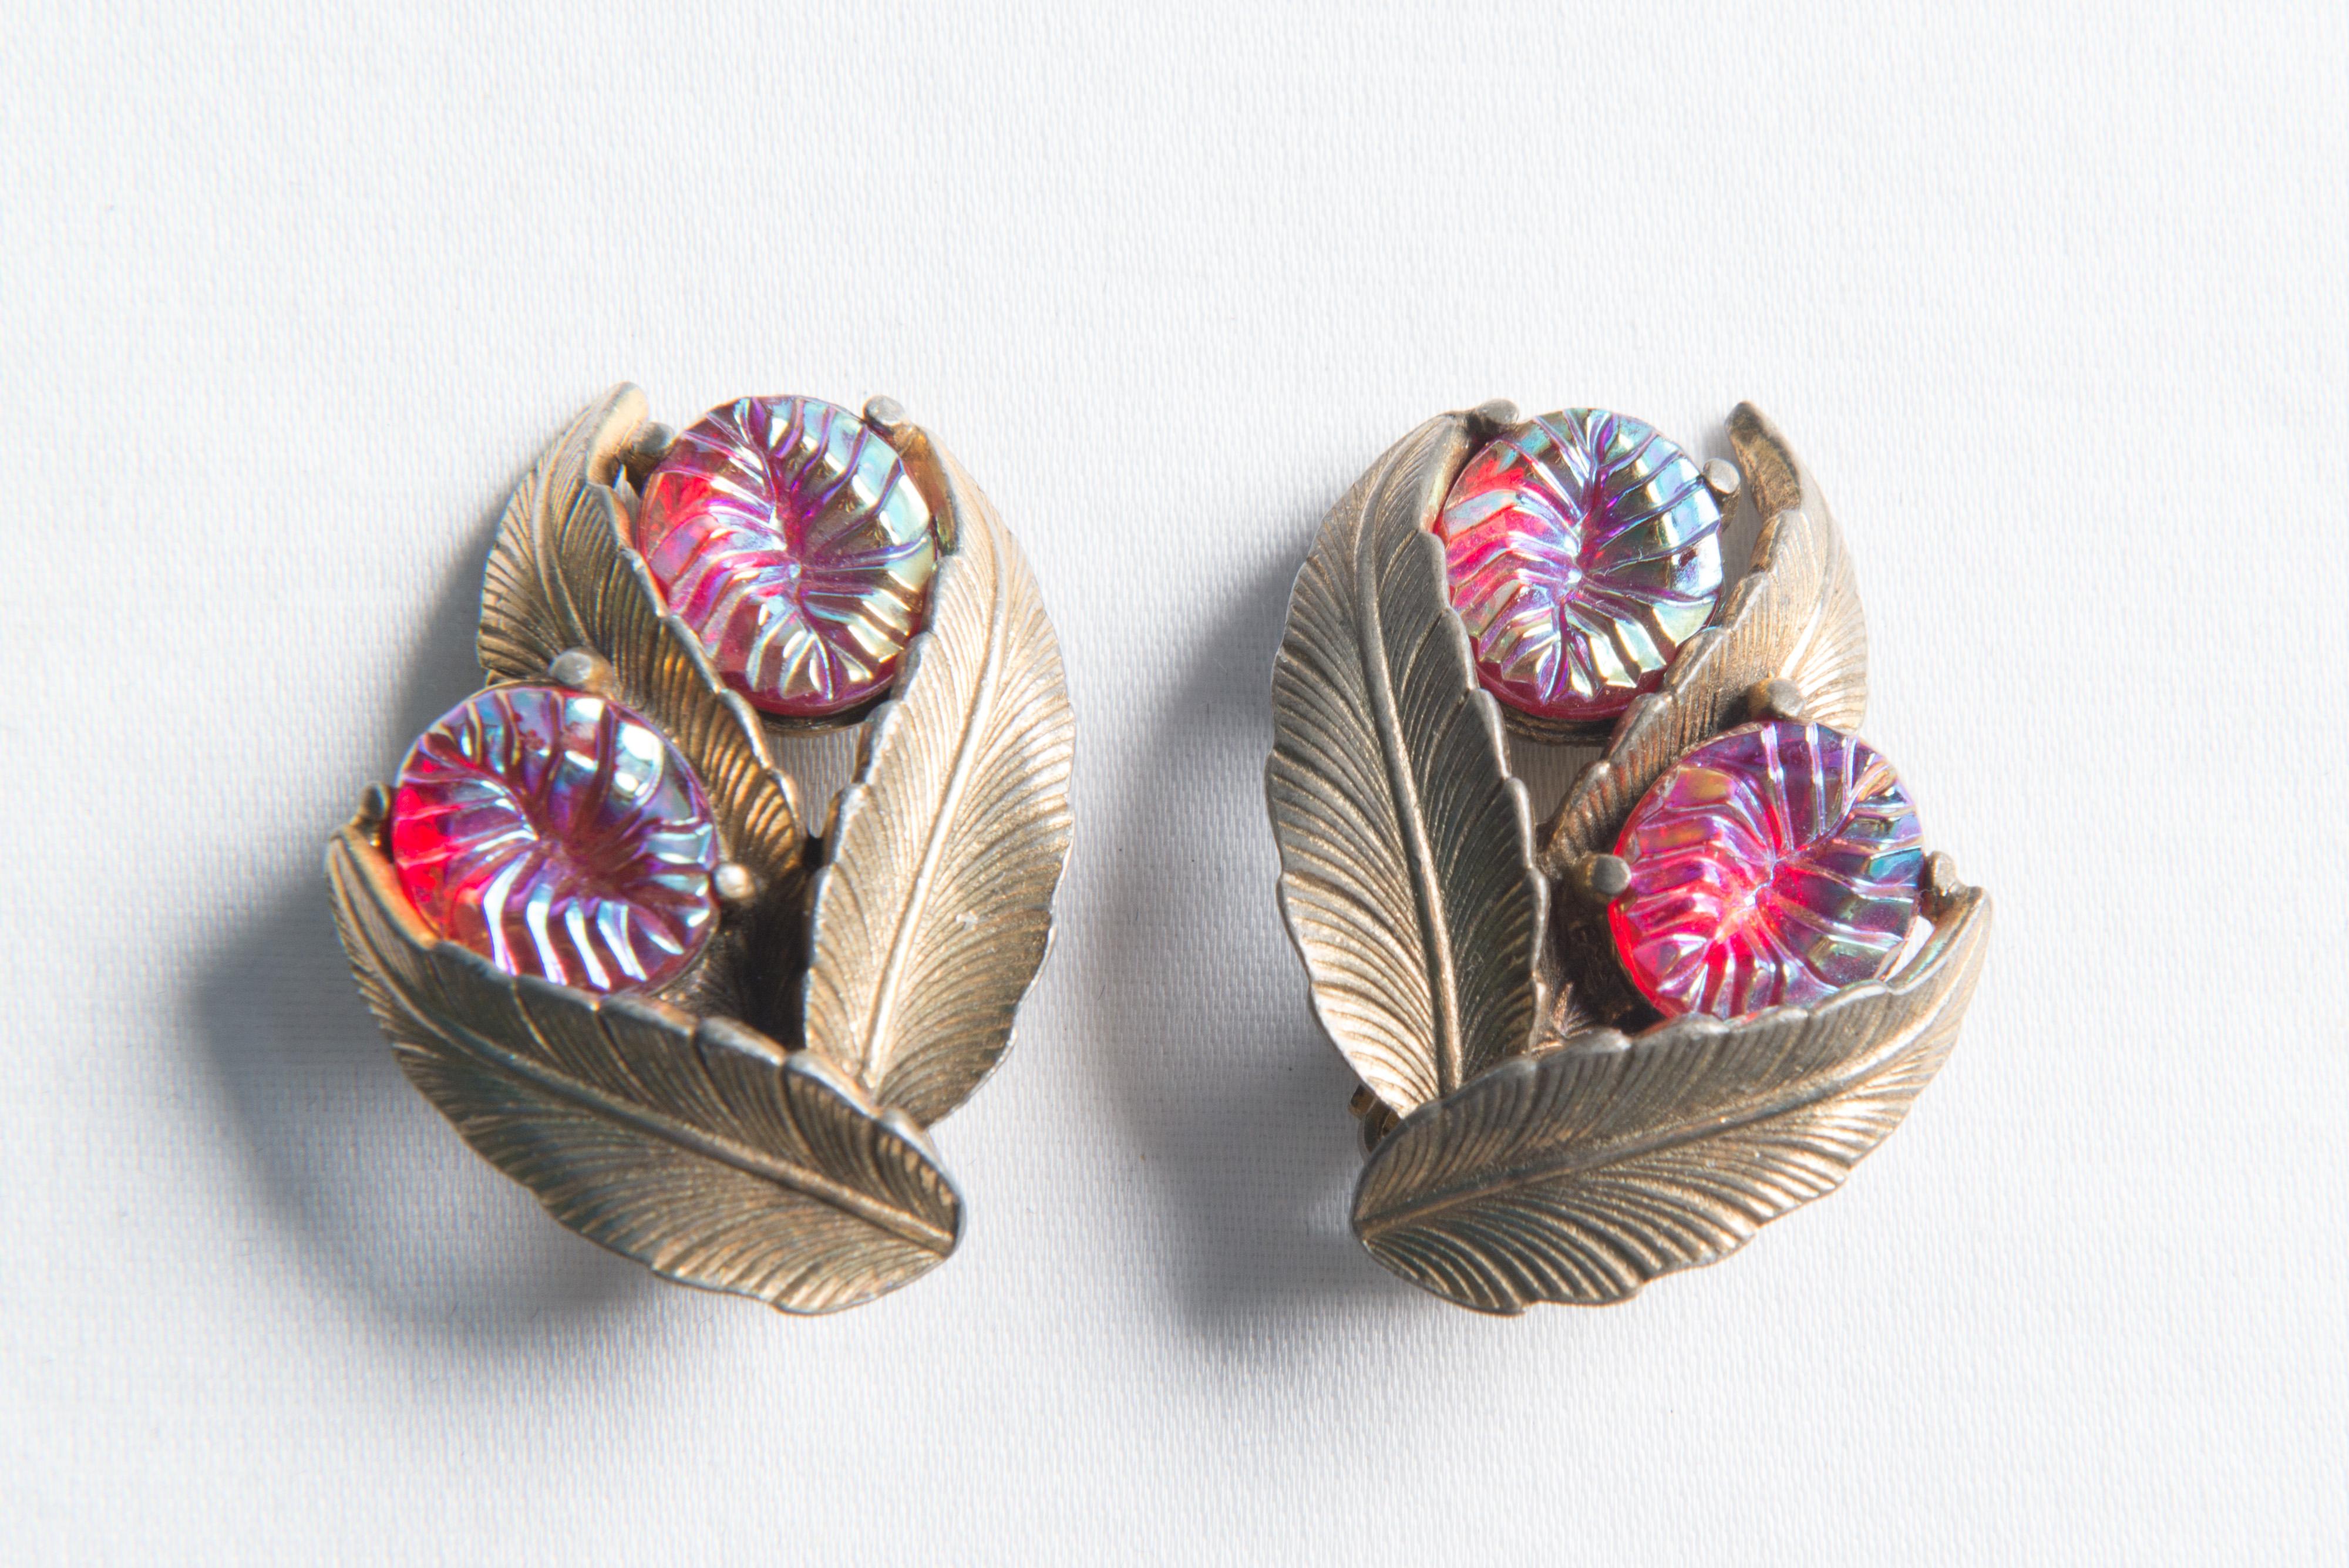 Ein Paar Elsa Schiaparelli Clip-Ohrringe aus den 1940er Jahren. Jeder Ohrring besteht aus drei goldfarbenen Blättern und zwei rubinfarbenen, strukturierten Steinen.
 